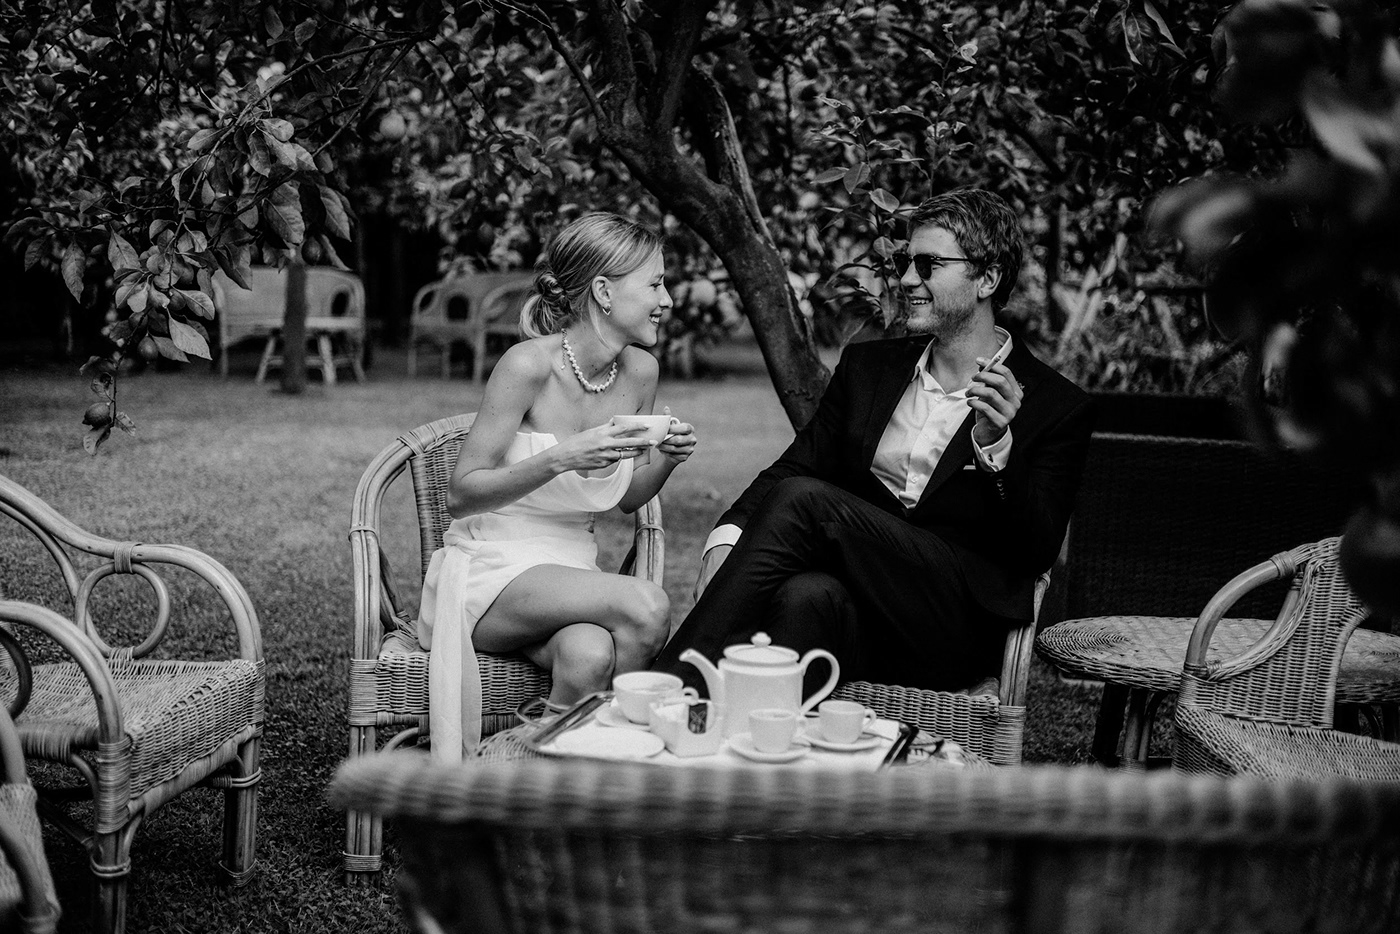 black and white photographer Photography  portrait Wedding Photography WeddingConcept weddingideas weddinginspiration Weddings weeding